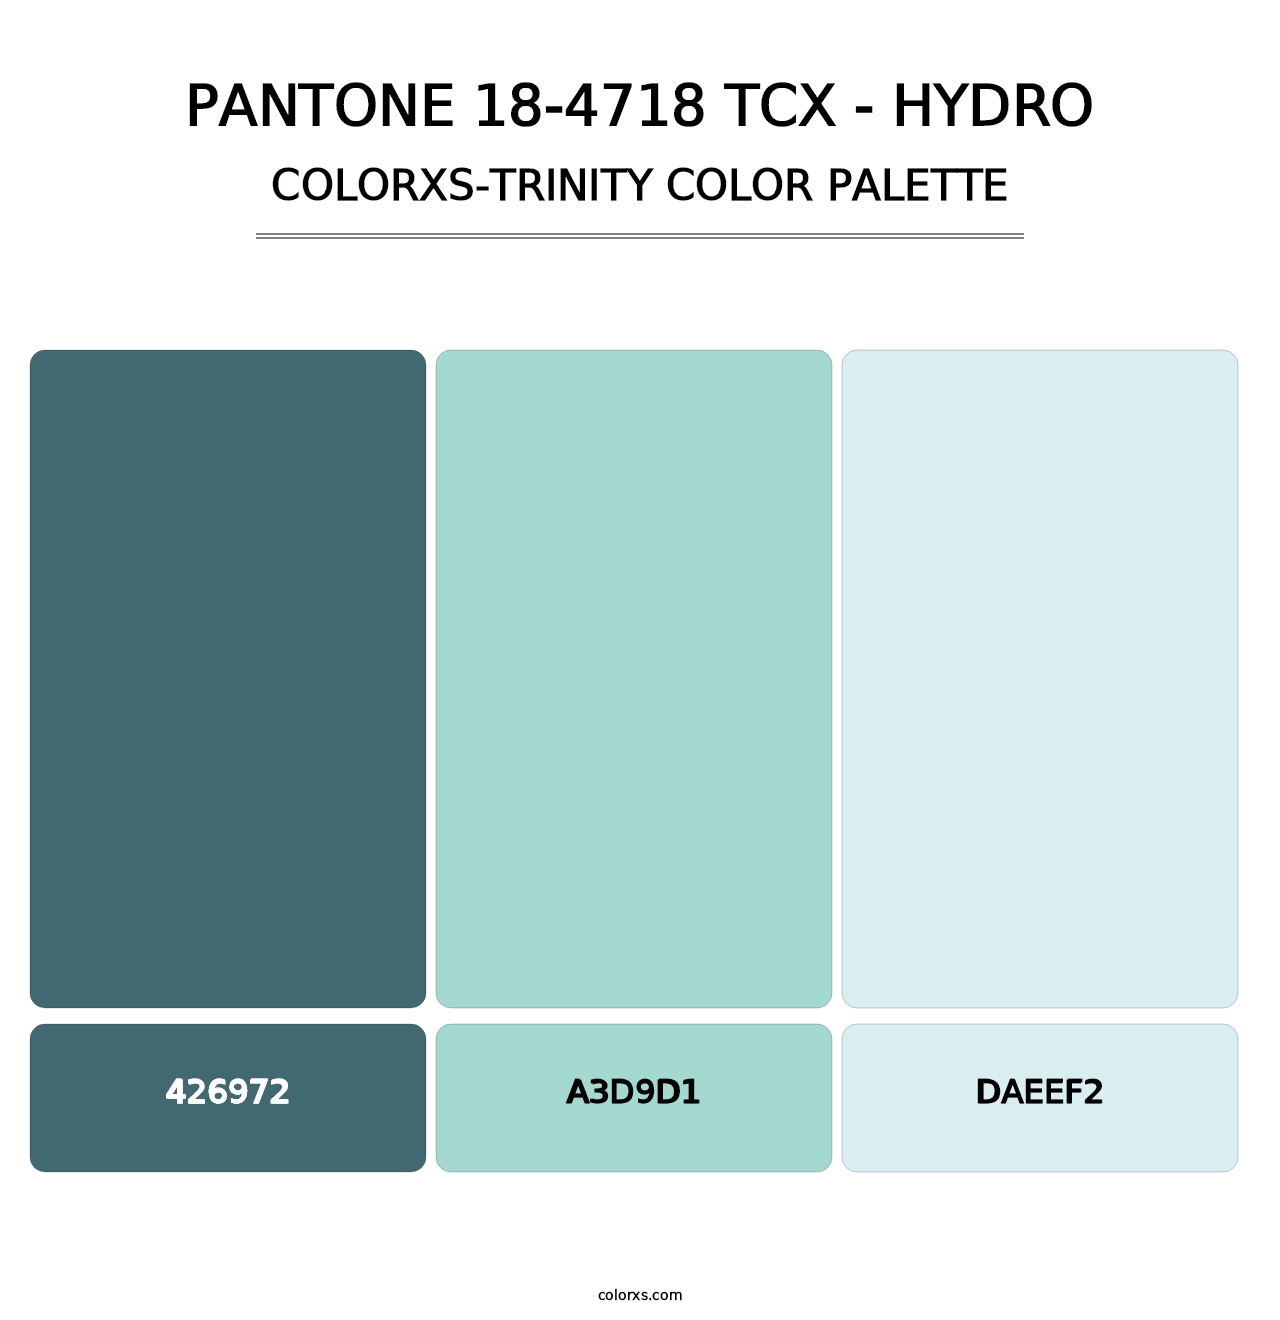 PANTONE 18-4718 TCX - Hydro - Colorxs Trinity Palette